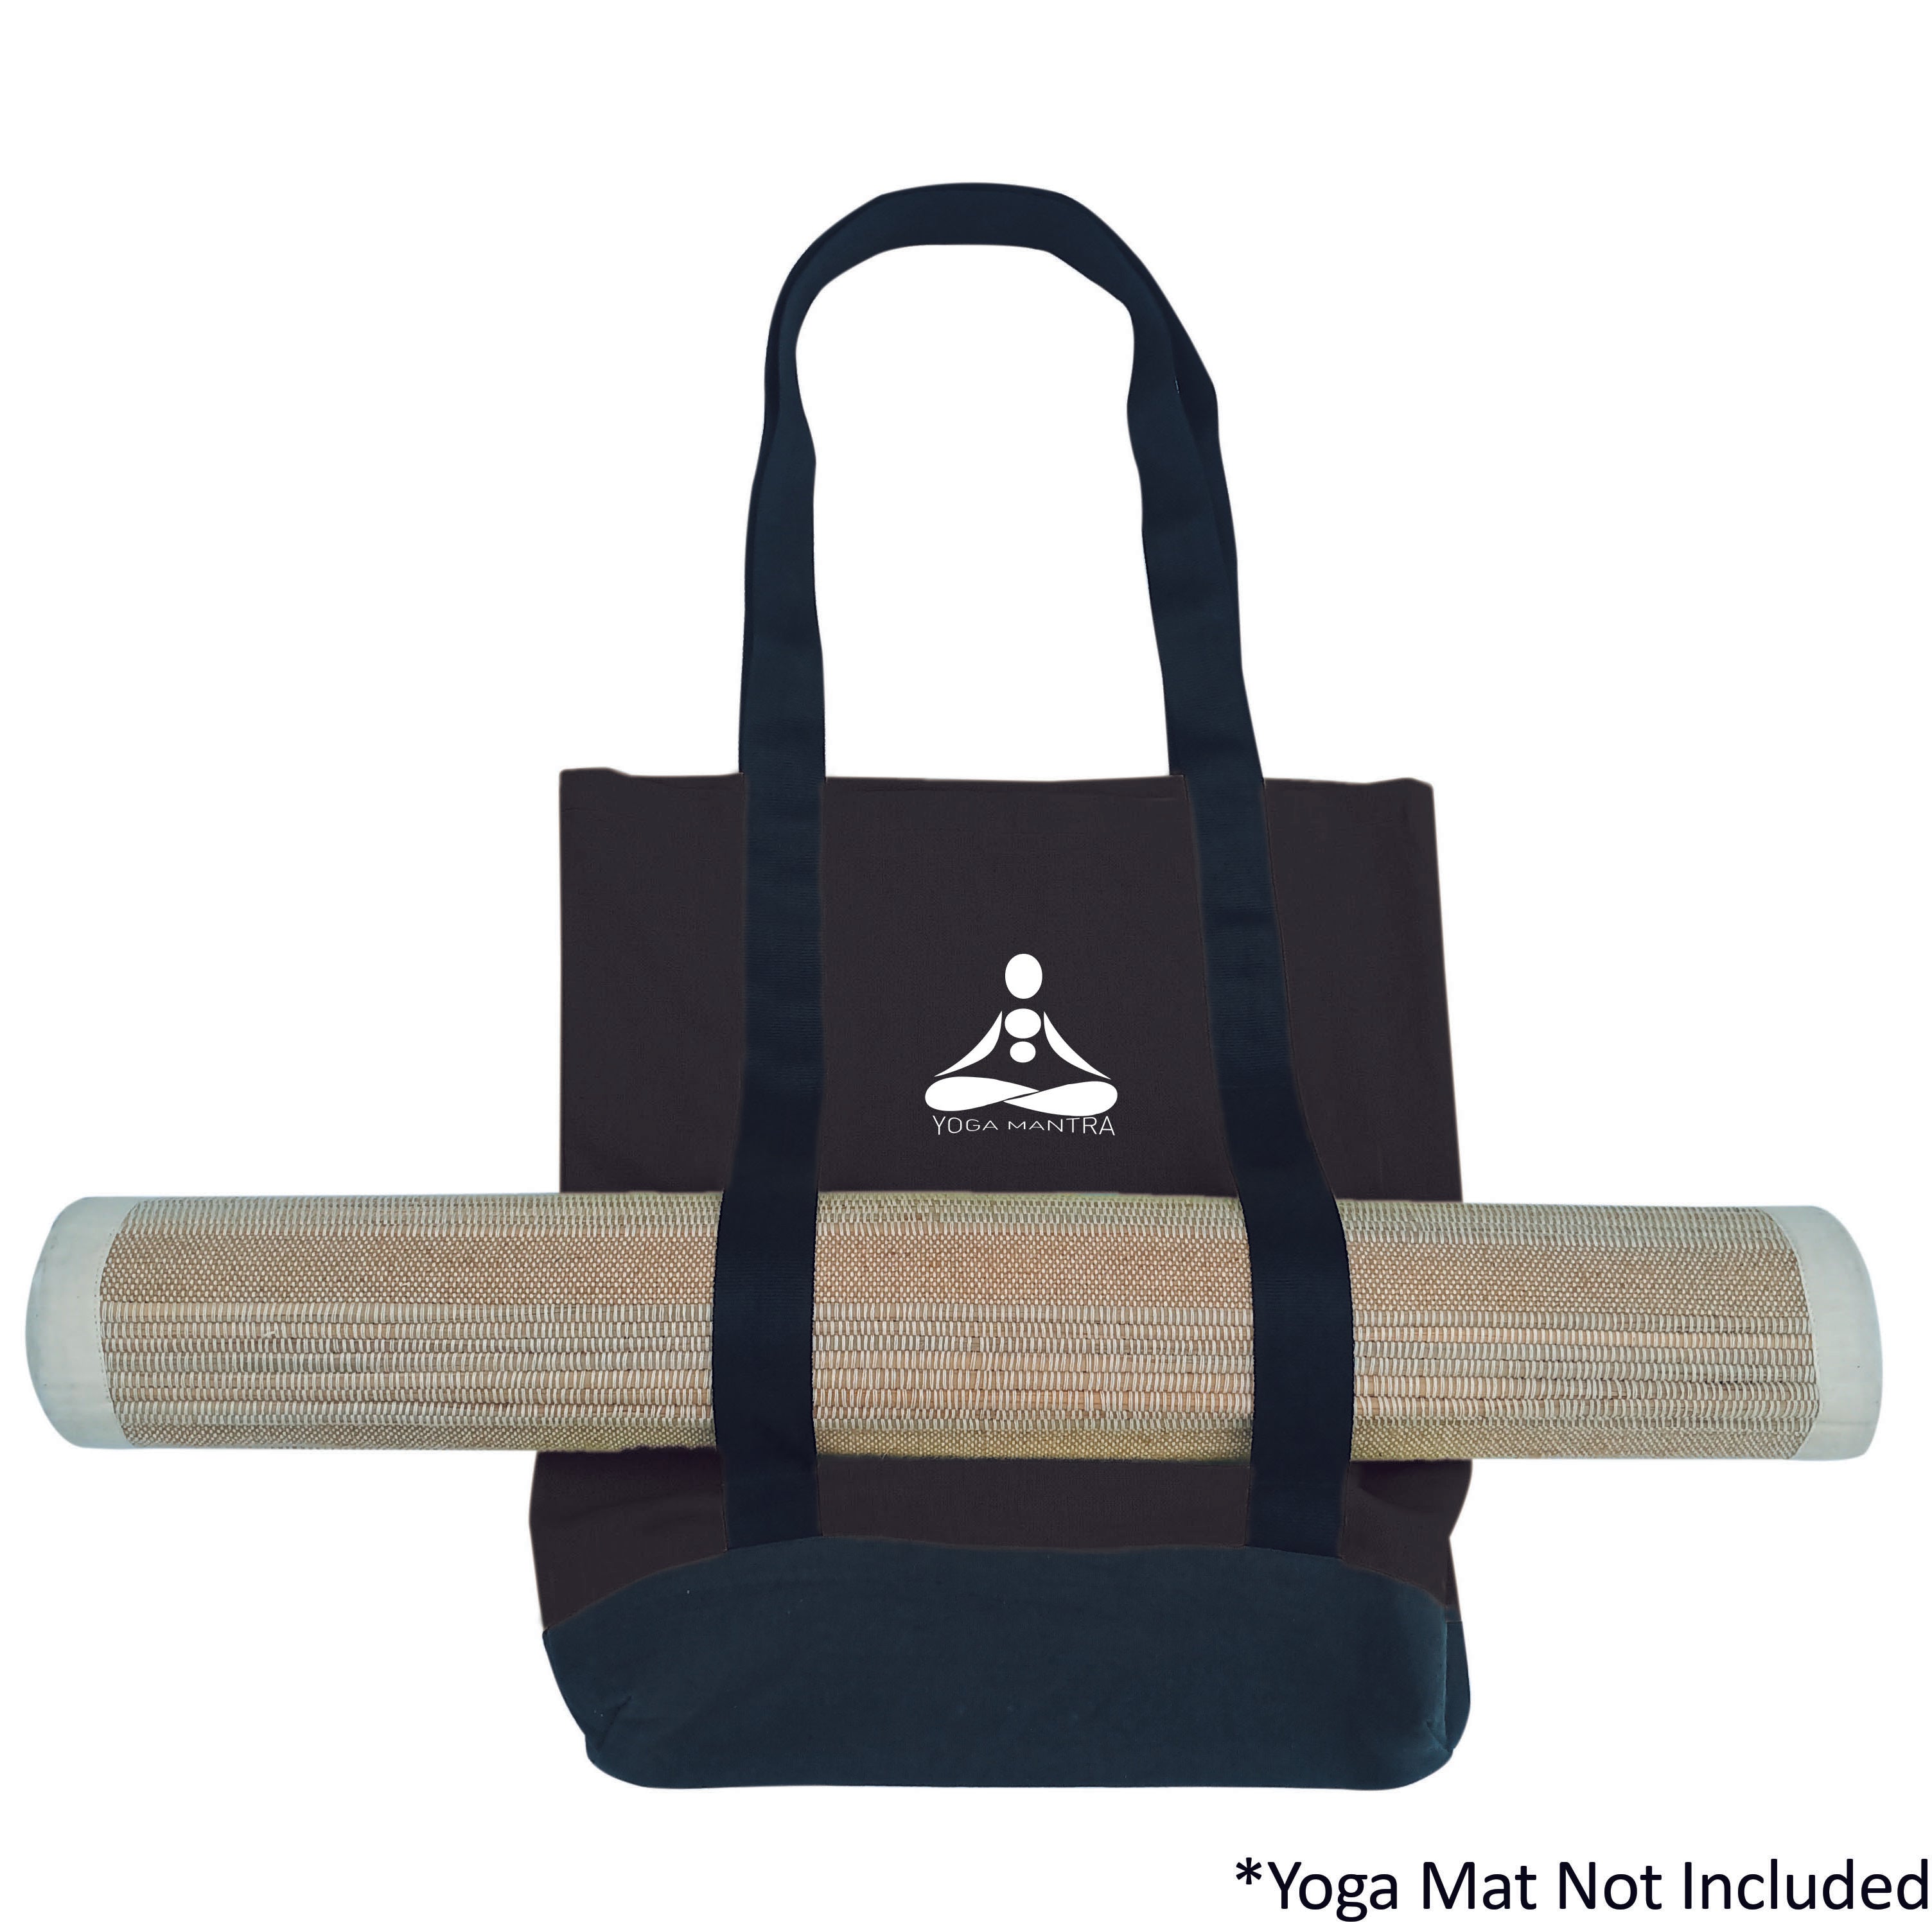 Yoga Mat carrier, yoga bag, black bag, gym bag